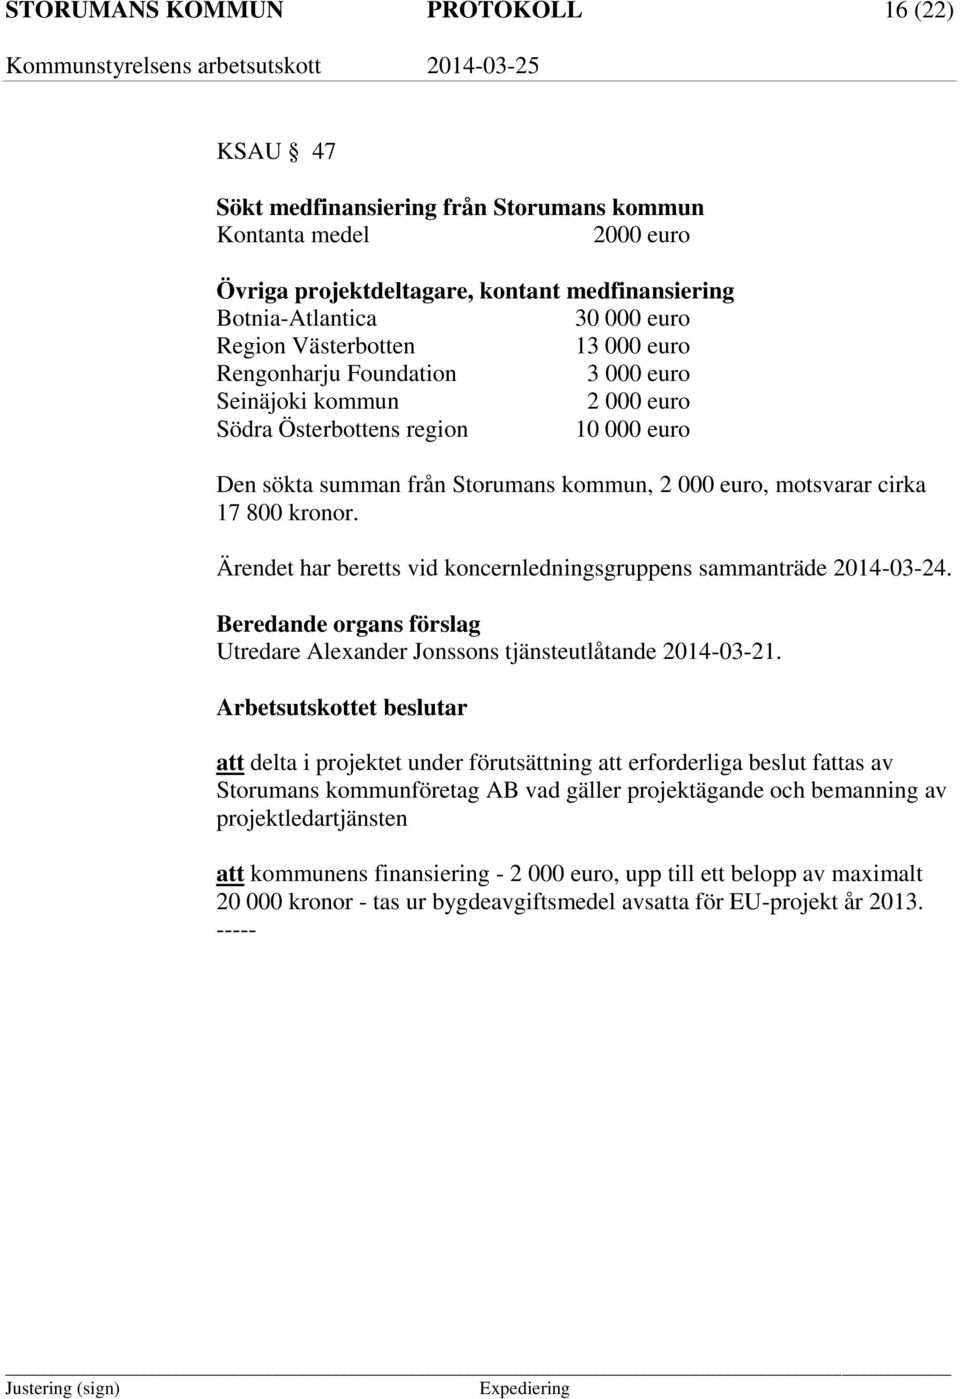 kronor. Ärendet har beretts vid koncernledningsgruppens sammanträde 2014-03-24. Utredare Alexander Jonssons tjänsteutlåtande 2014-03-21.